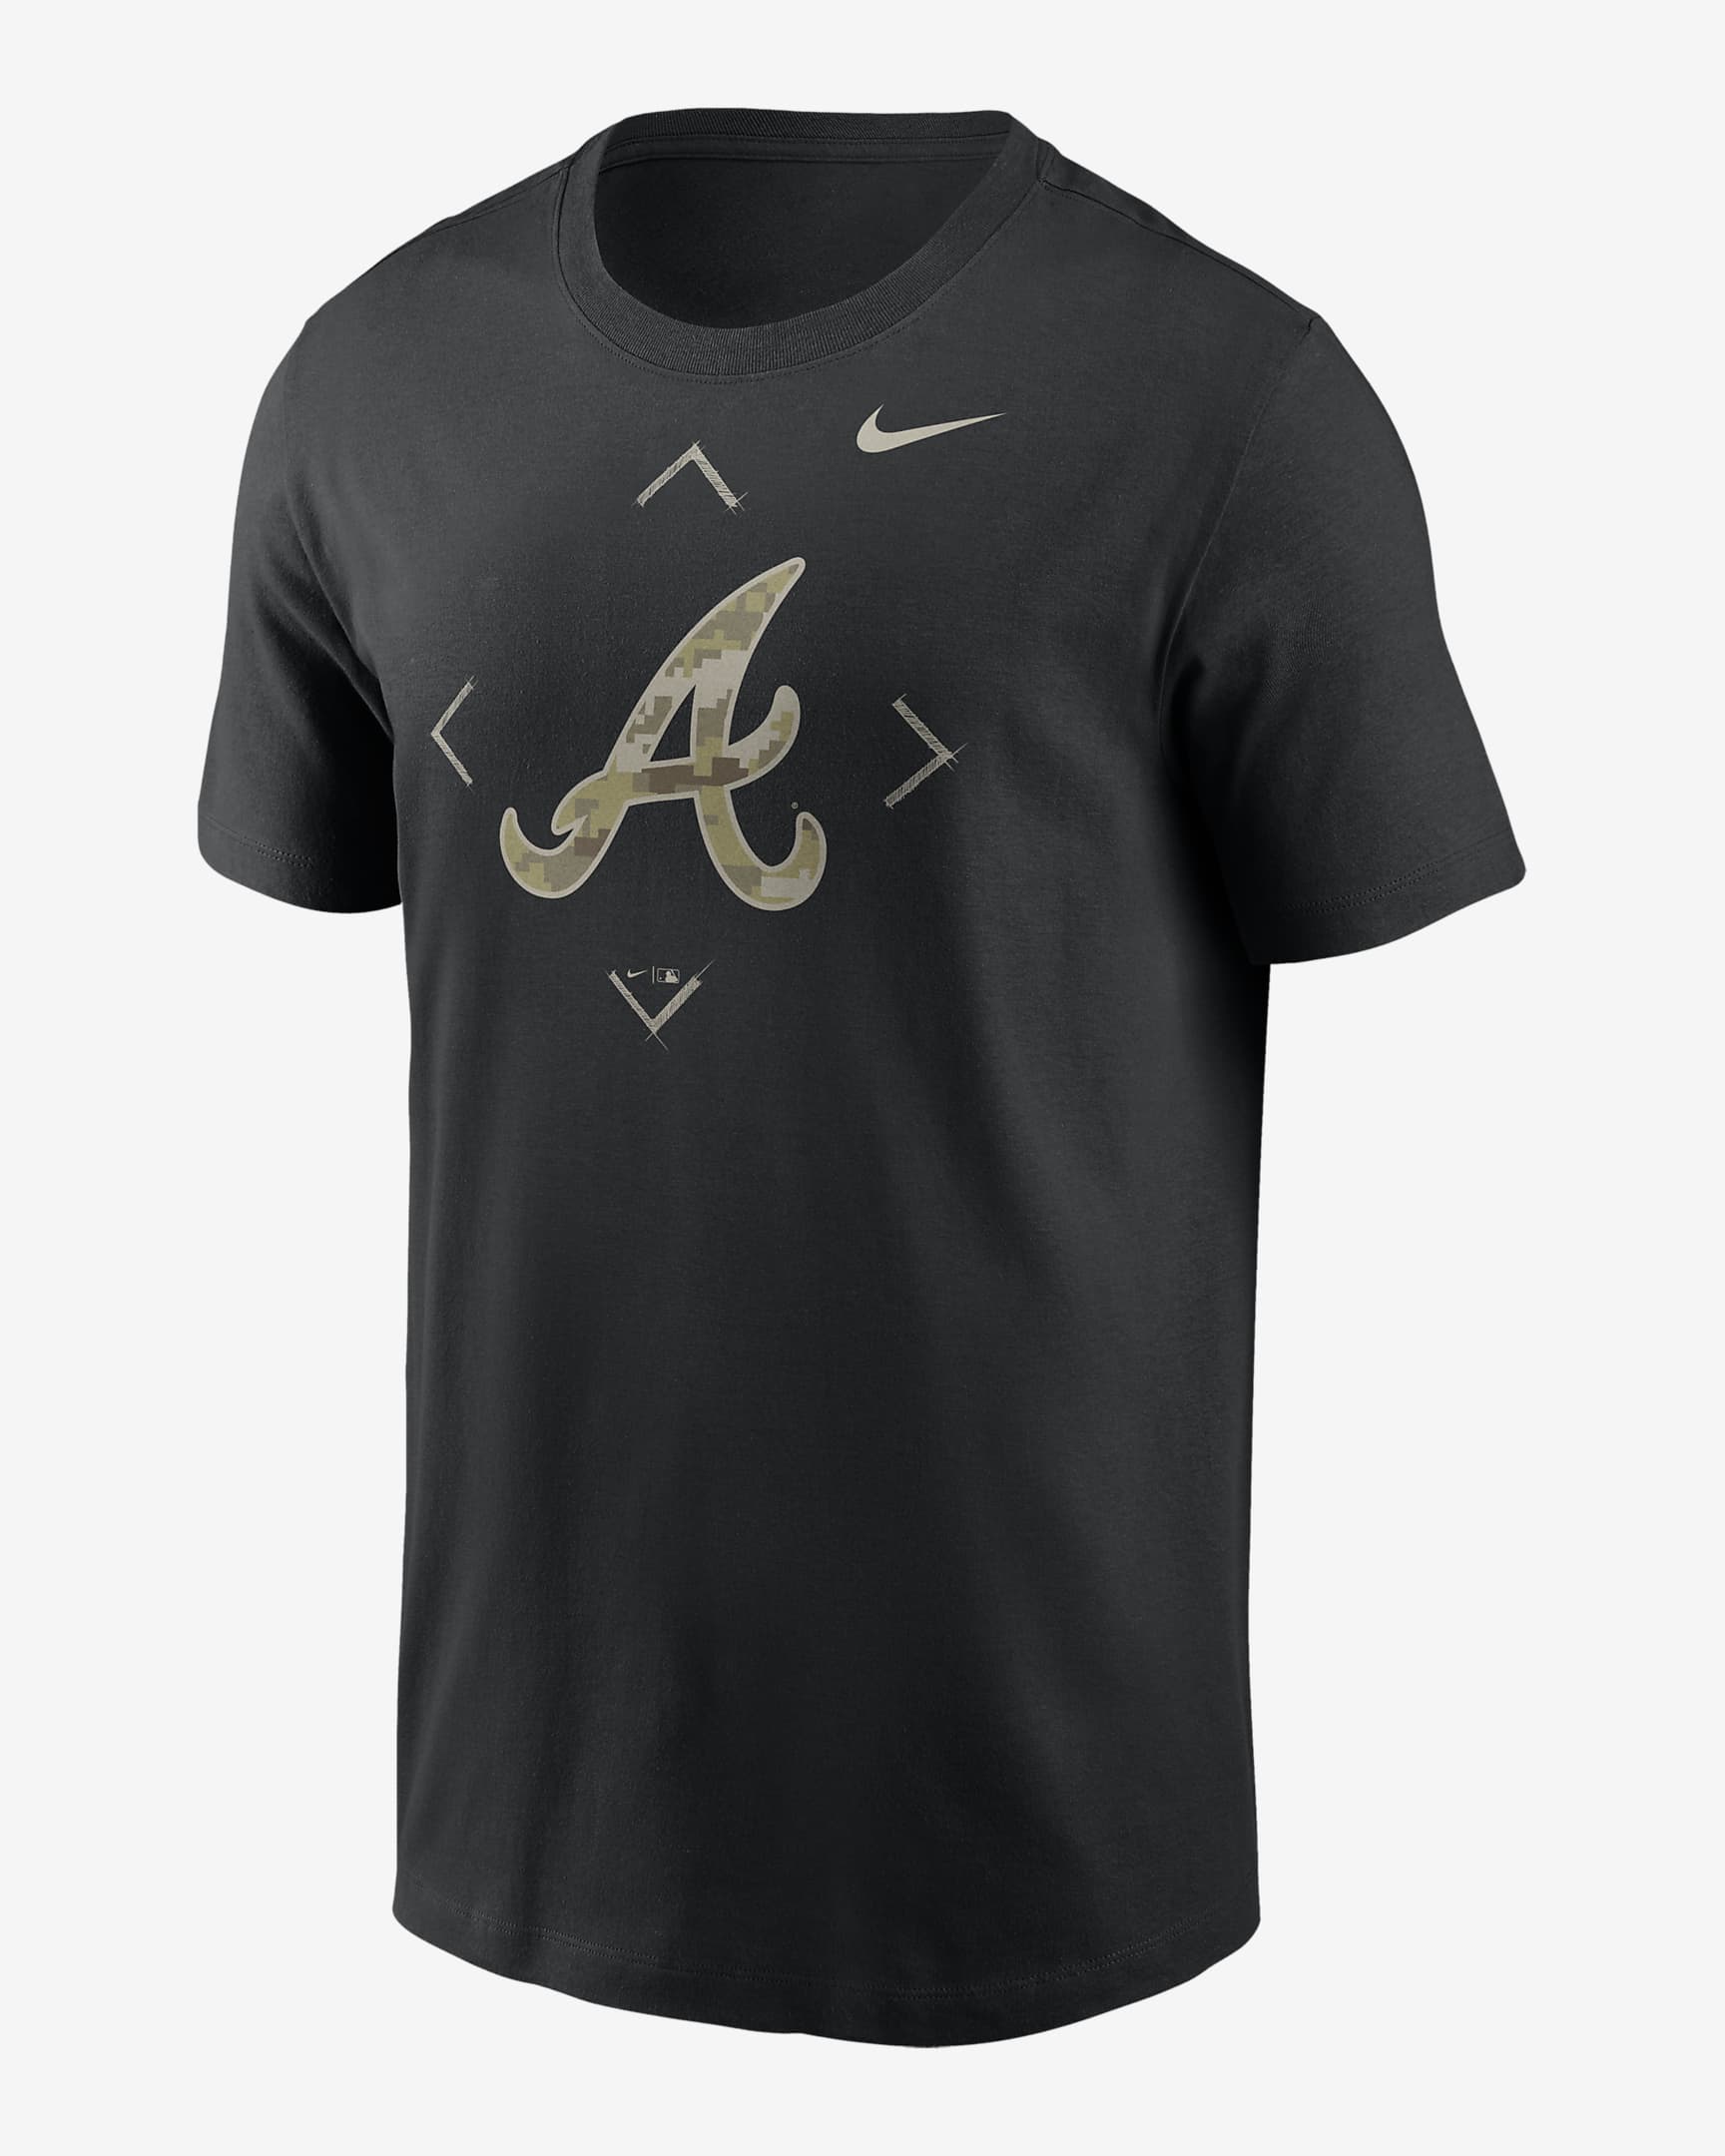 Playera Nike de la MLB para hombre Atlanta Braves Camo Logo. Nike.com